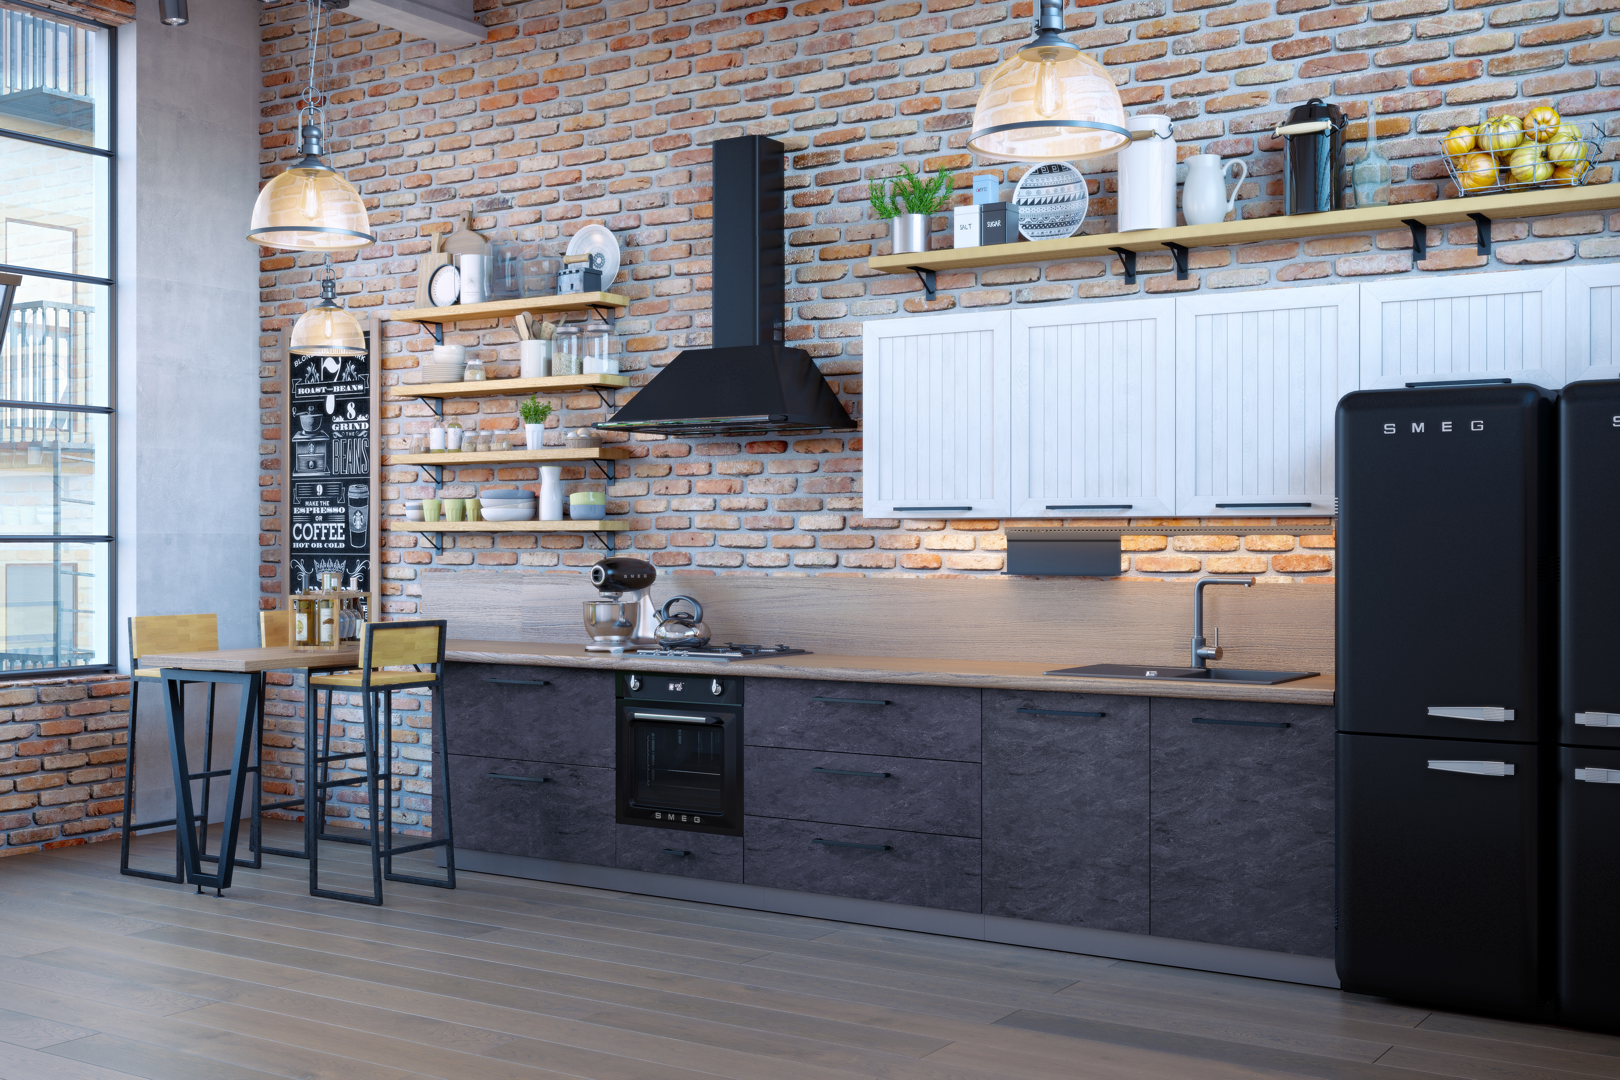 Дизайн кухни-гостиной 20 кв.м. - 70 фото интерьеров, красивые идеи ремонта и отделки